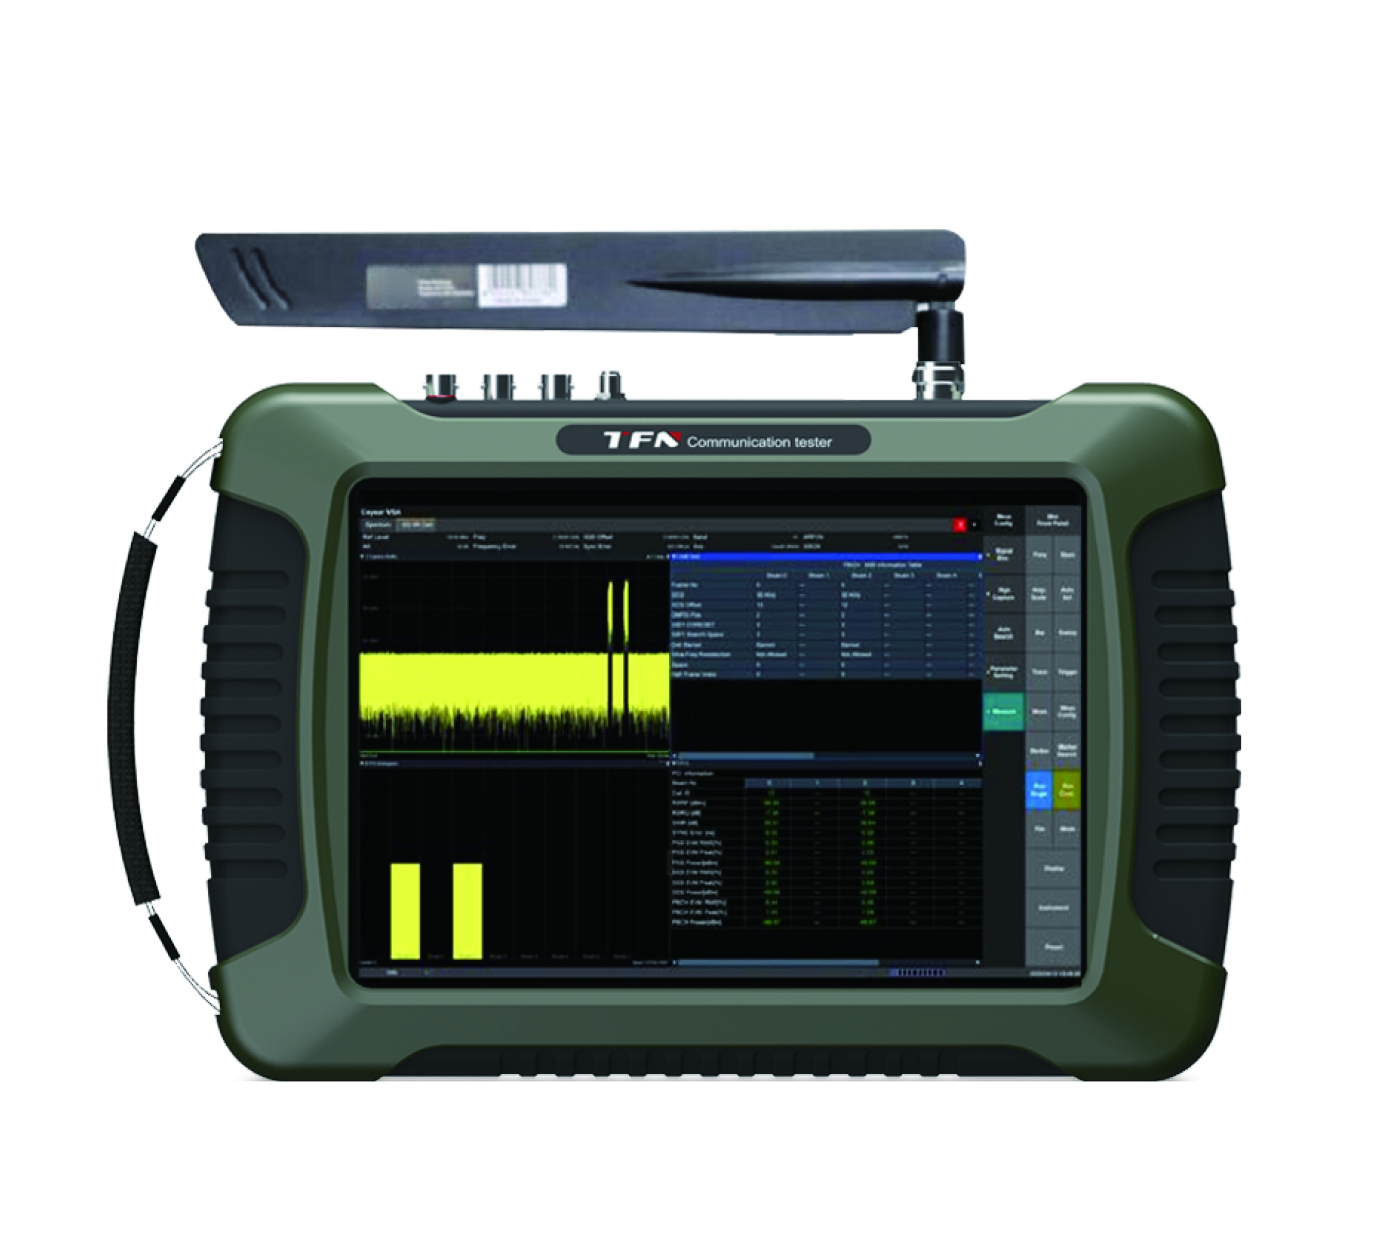 手持式频谱分析仪 TFN RMT720A 高性能全功能频谱分析仪